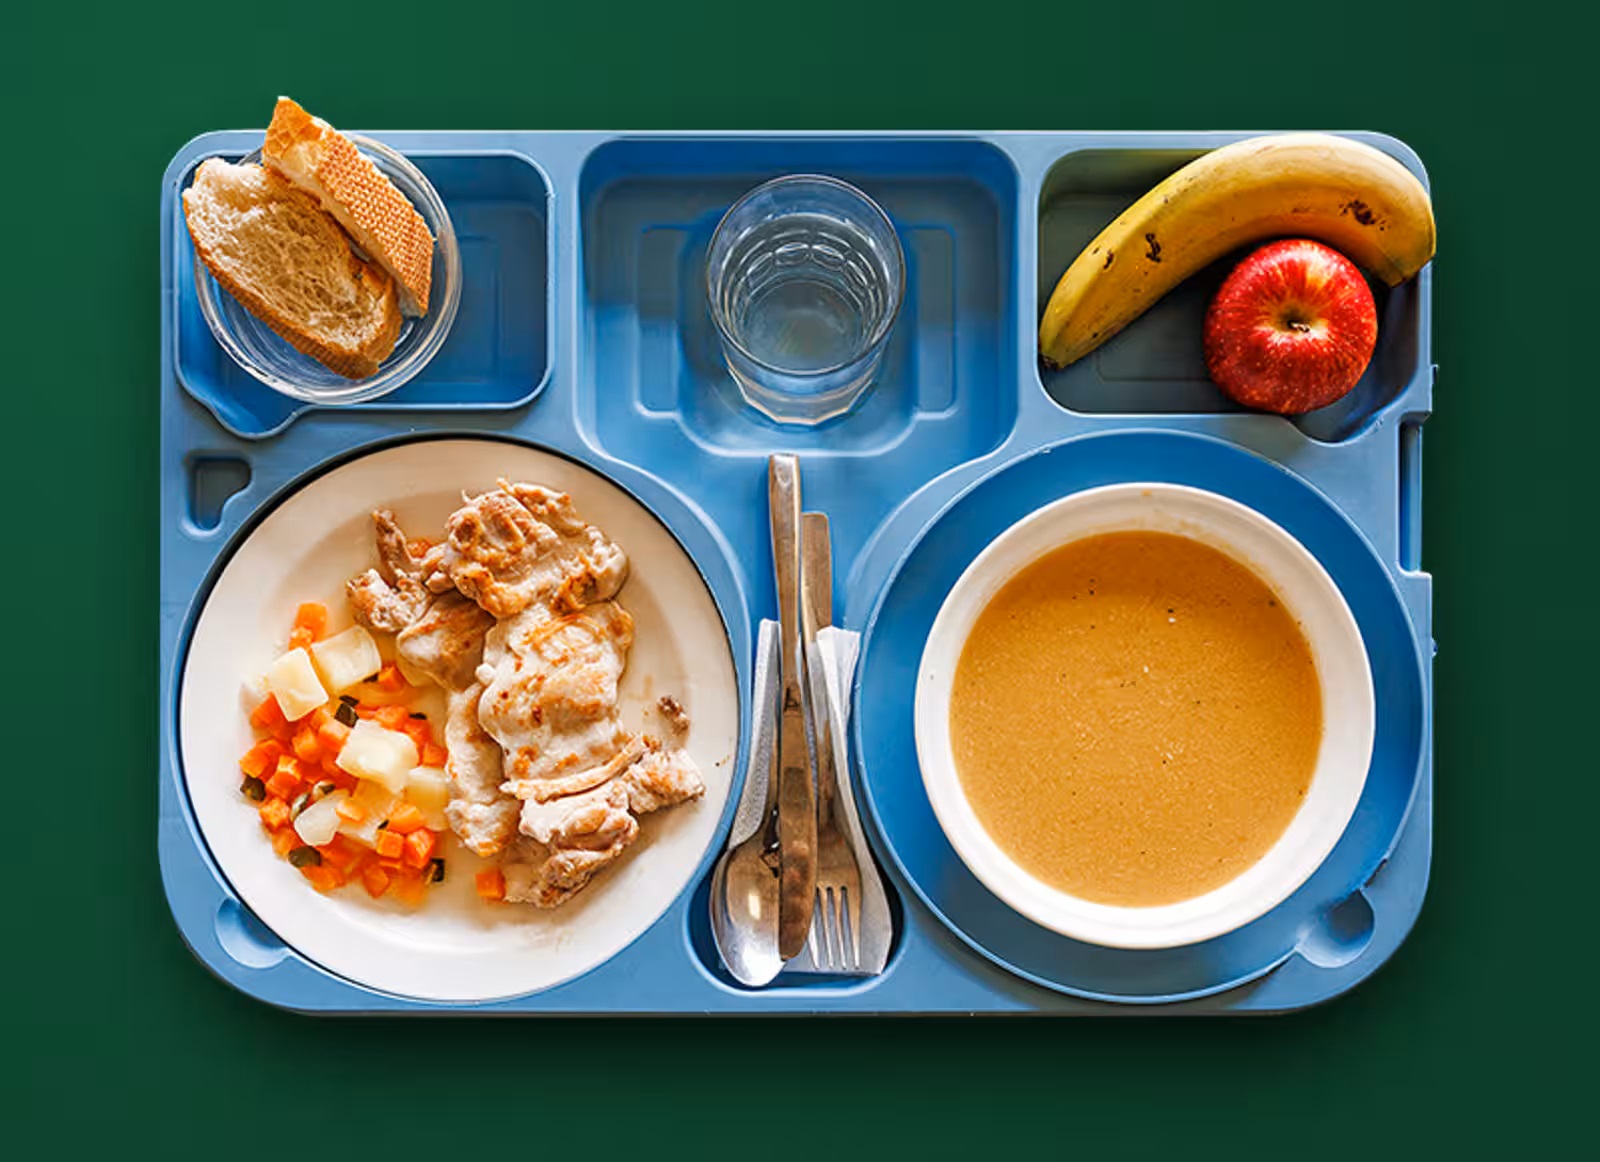 Fotografía de Pablo García del artículo de The Guardian "about stimulating children how school lunches look".